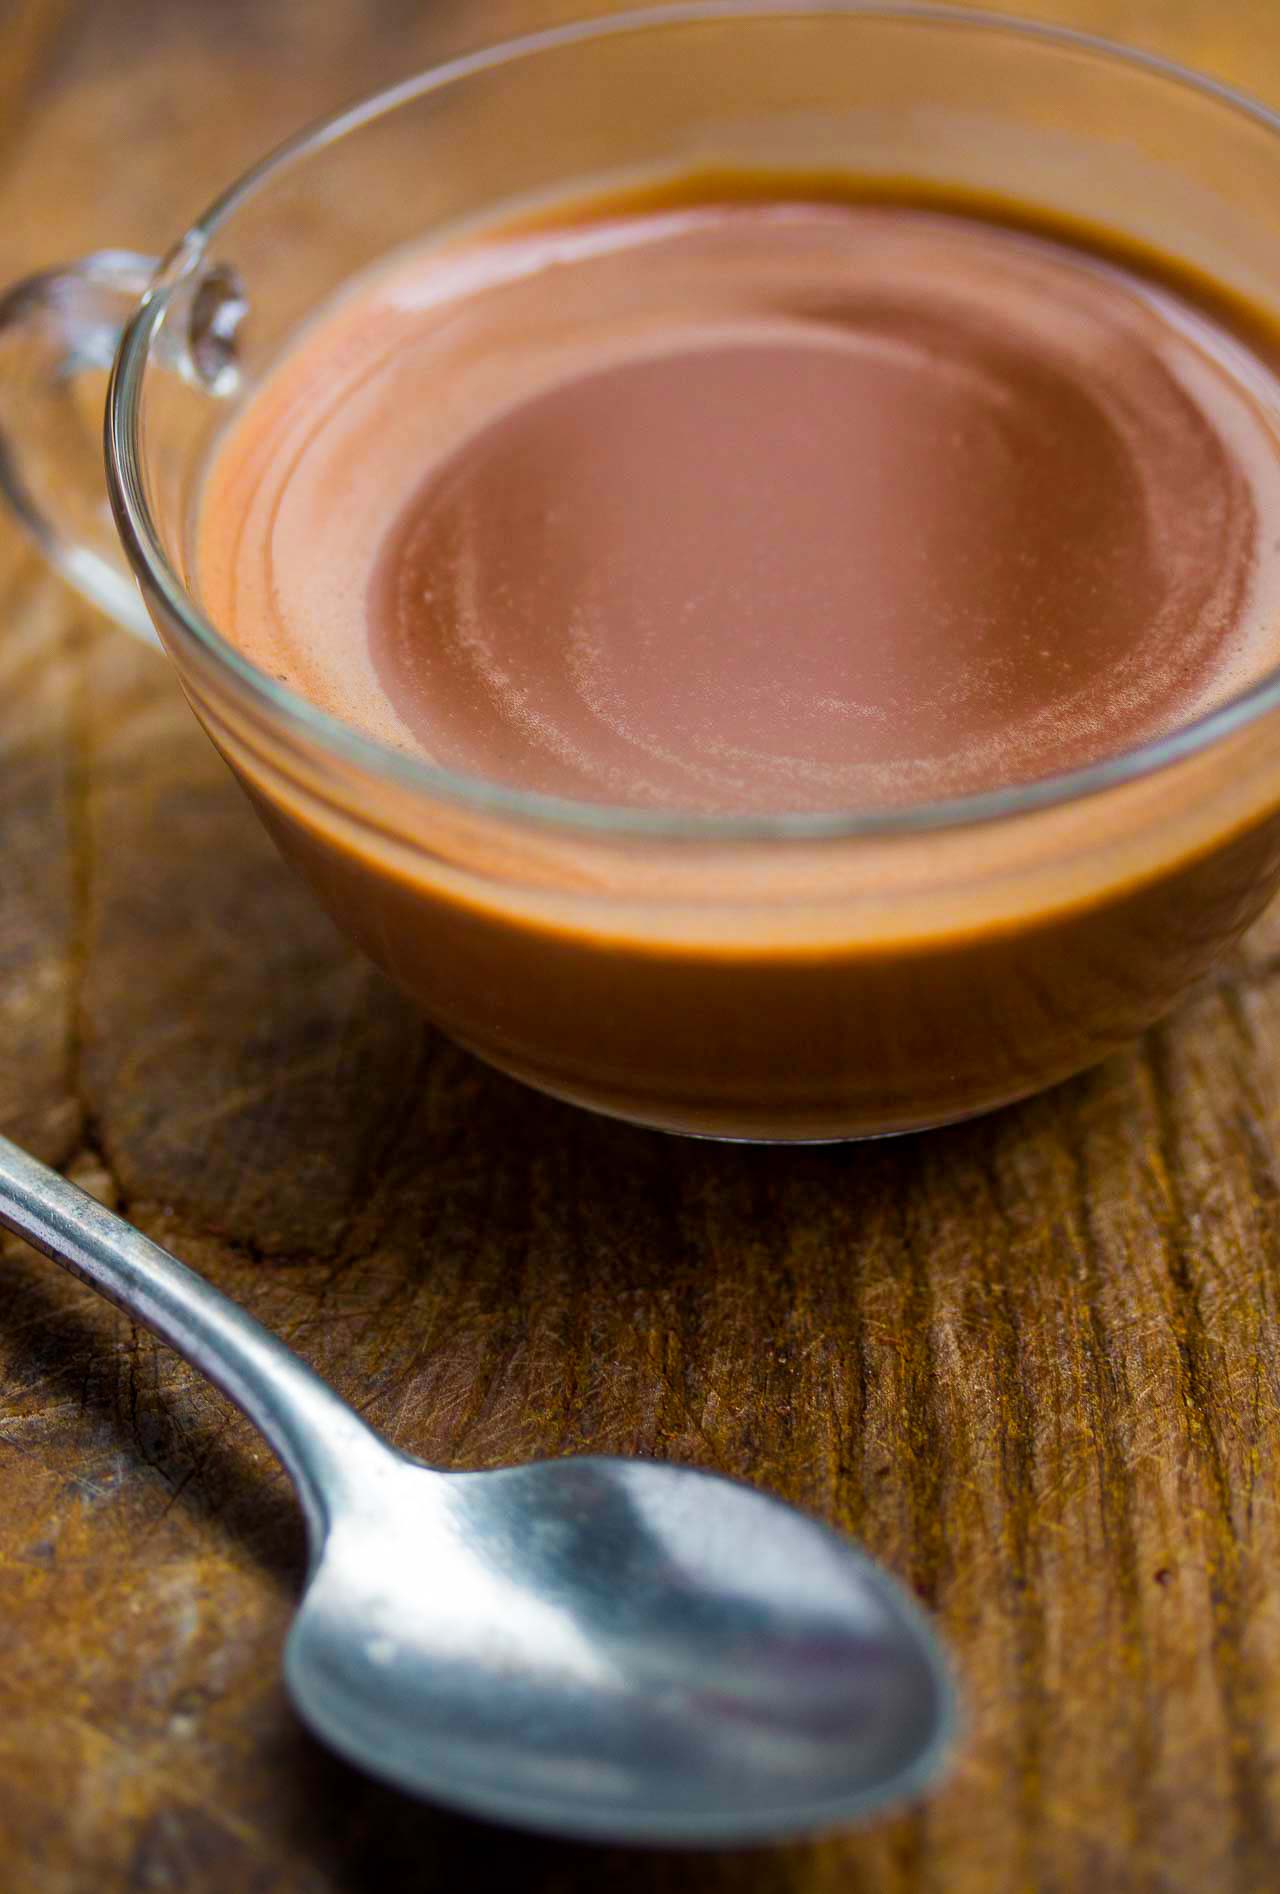 https://www.davidlebovitz.com/wp-content/uploads/2018/03/Belgian-hot-chocolate-recipe-chocolat-chaud.jpg